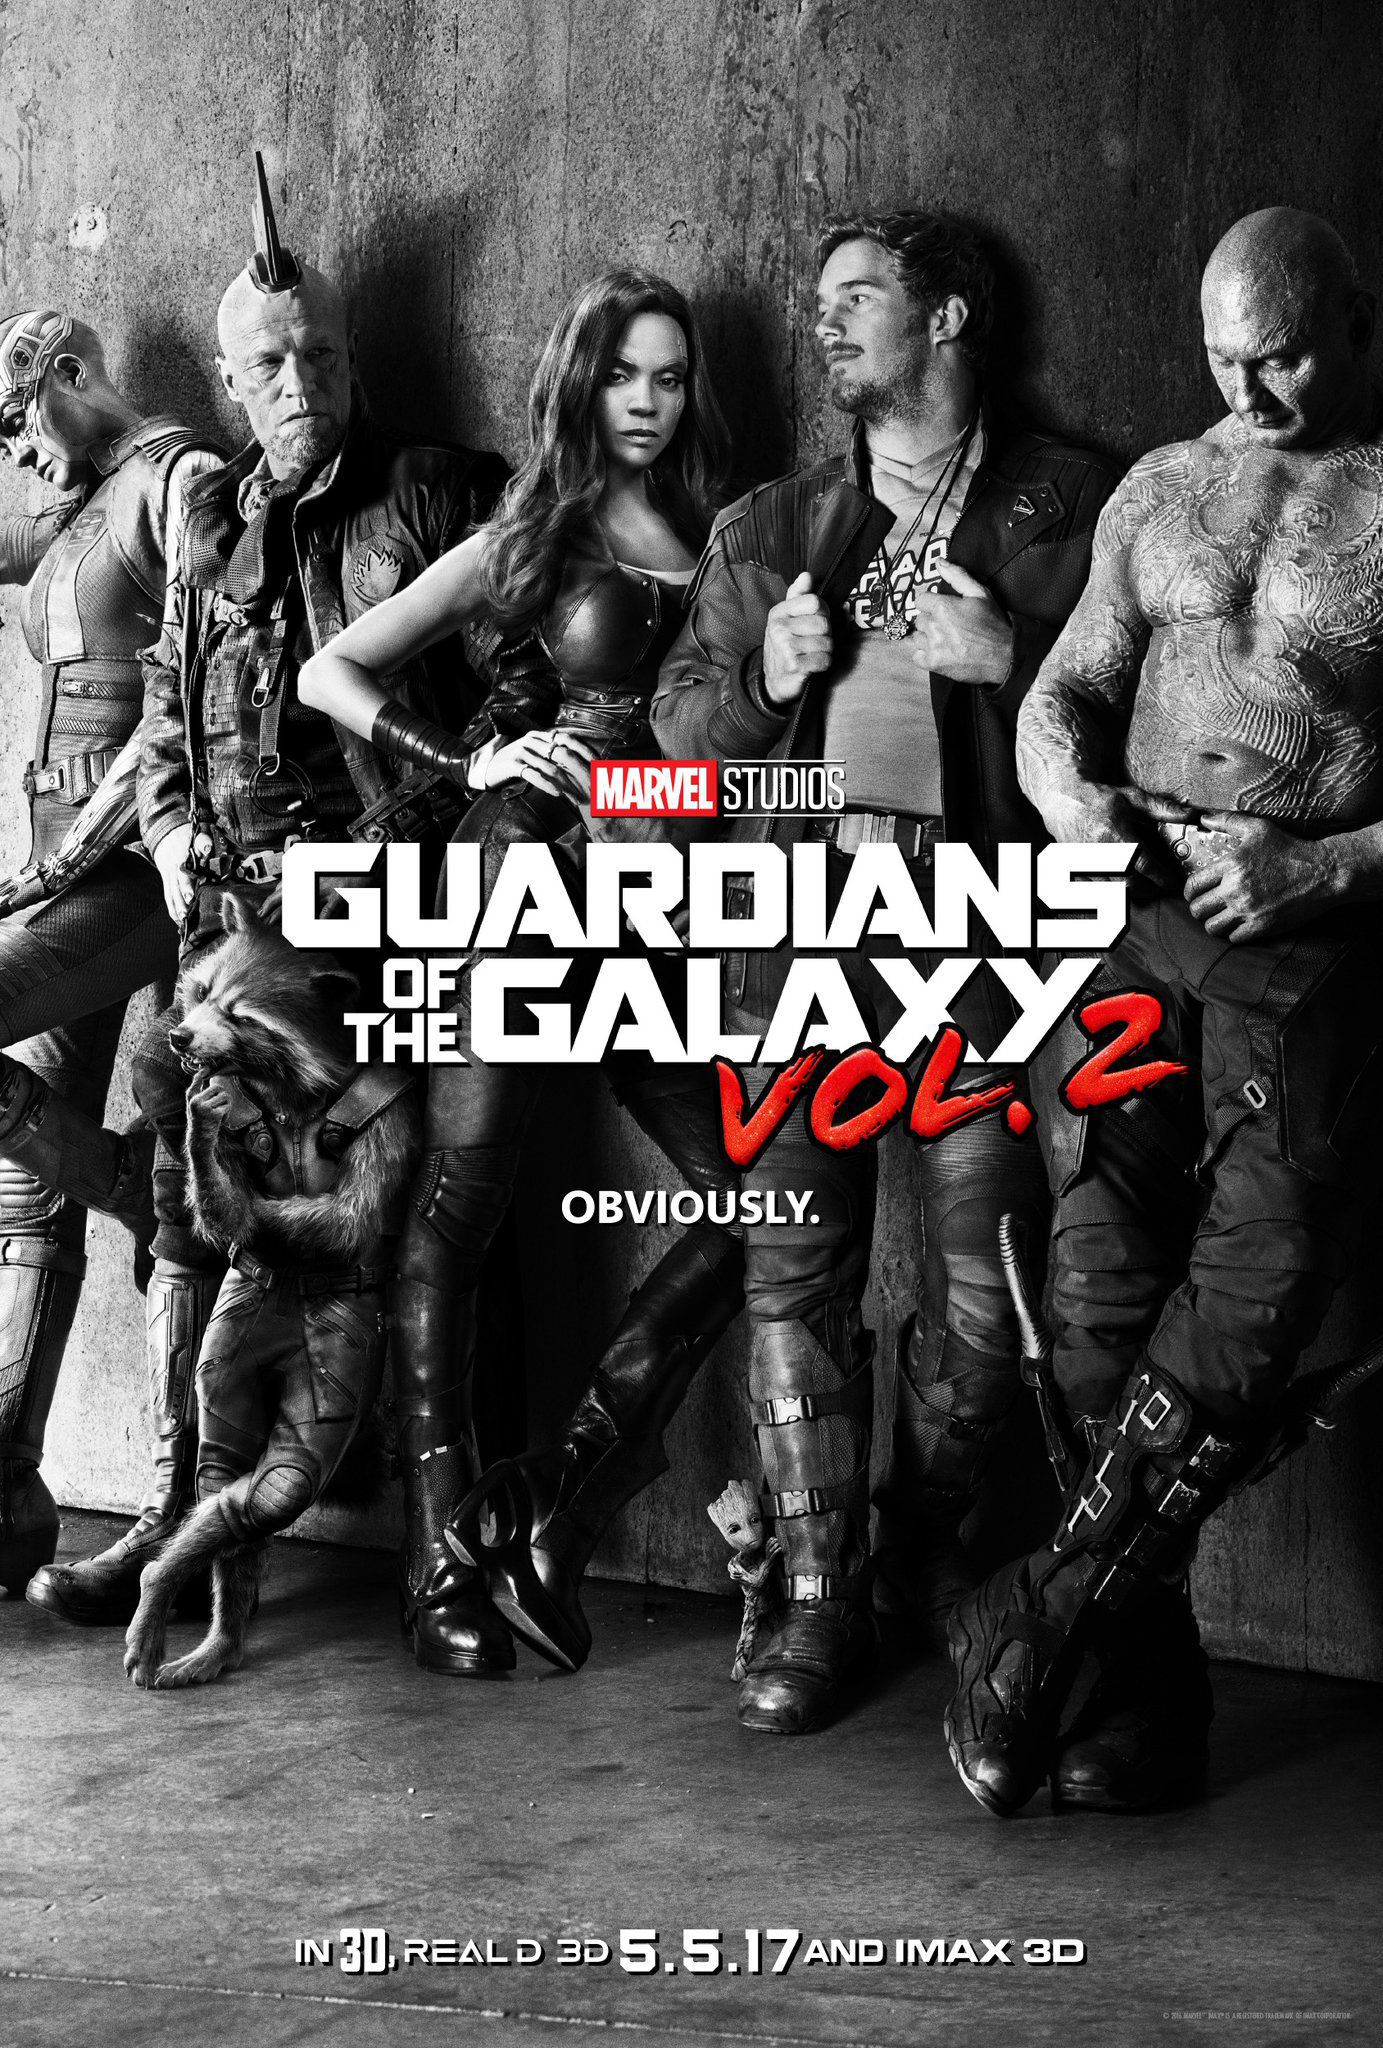 Guardianes de la Galaxia volumen 2, trailer y poster oficiales